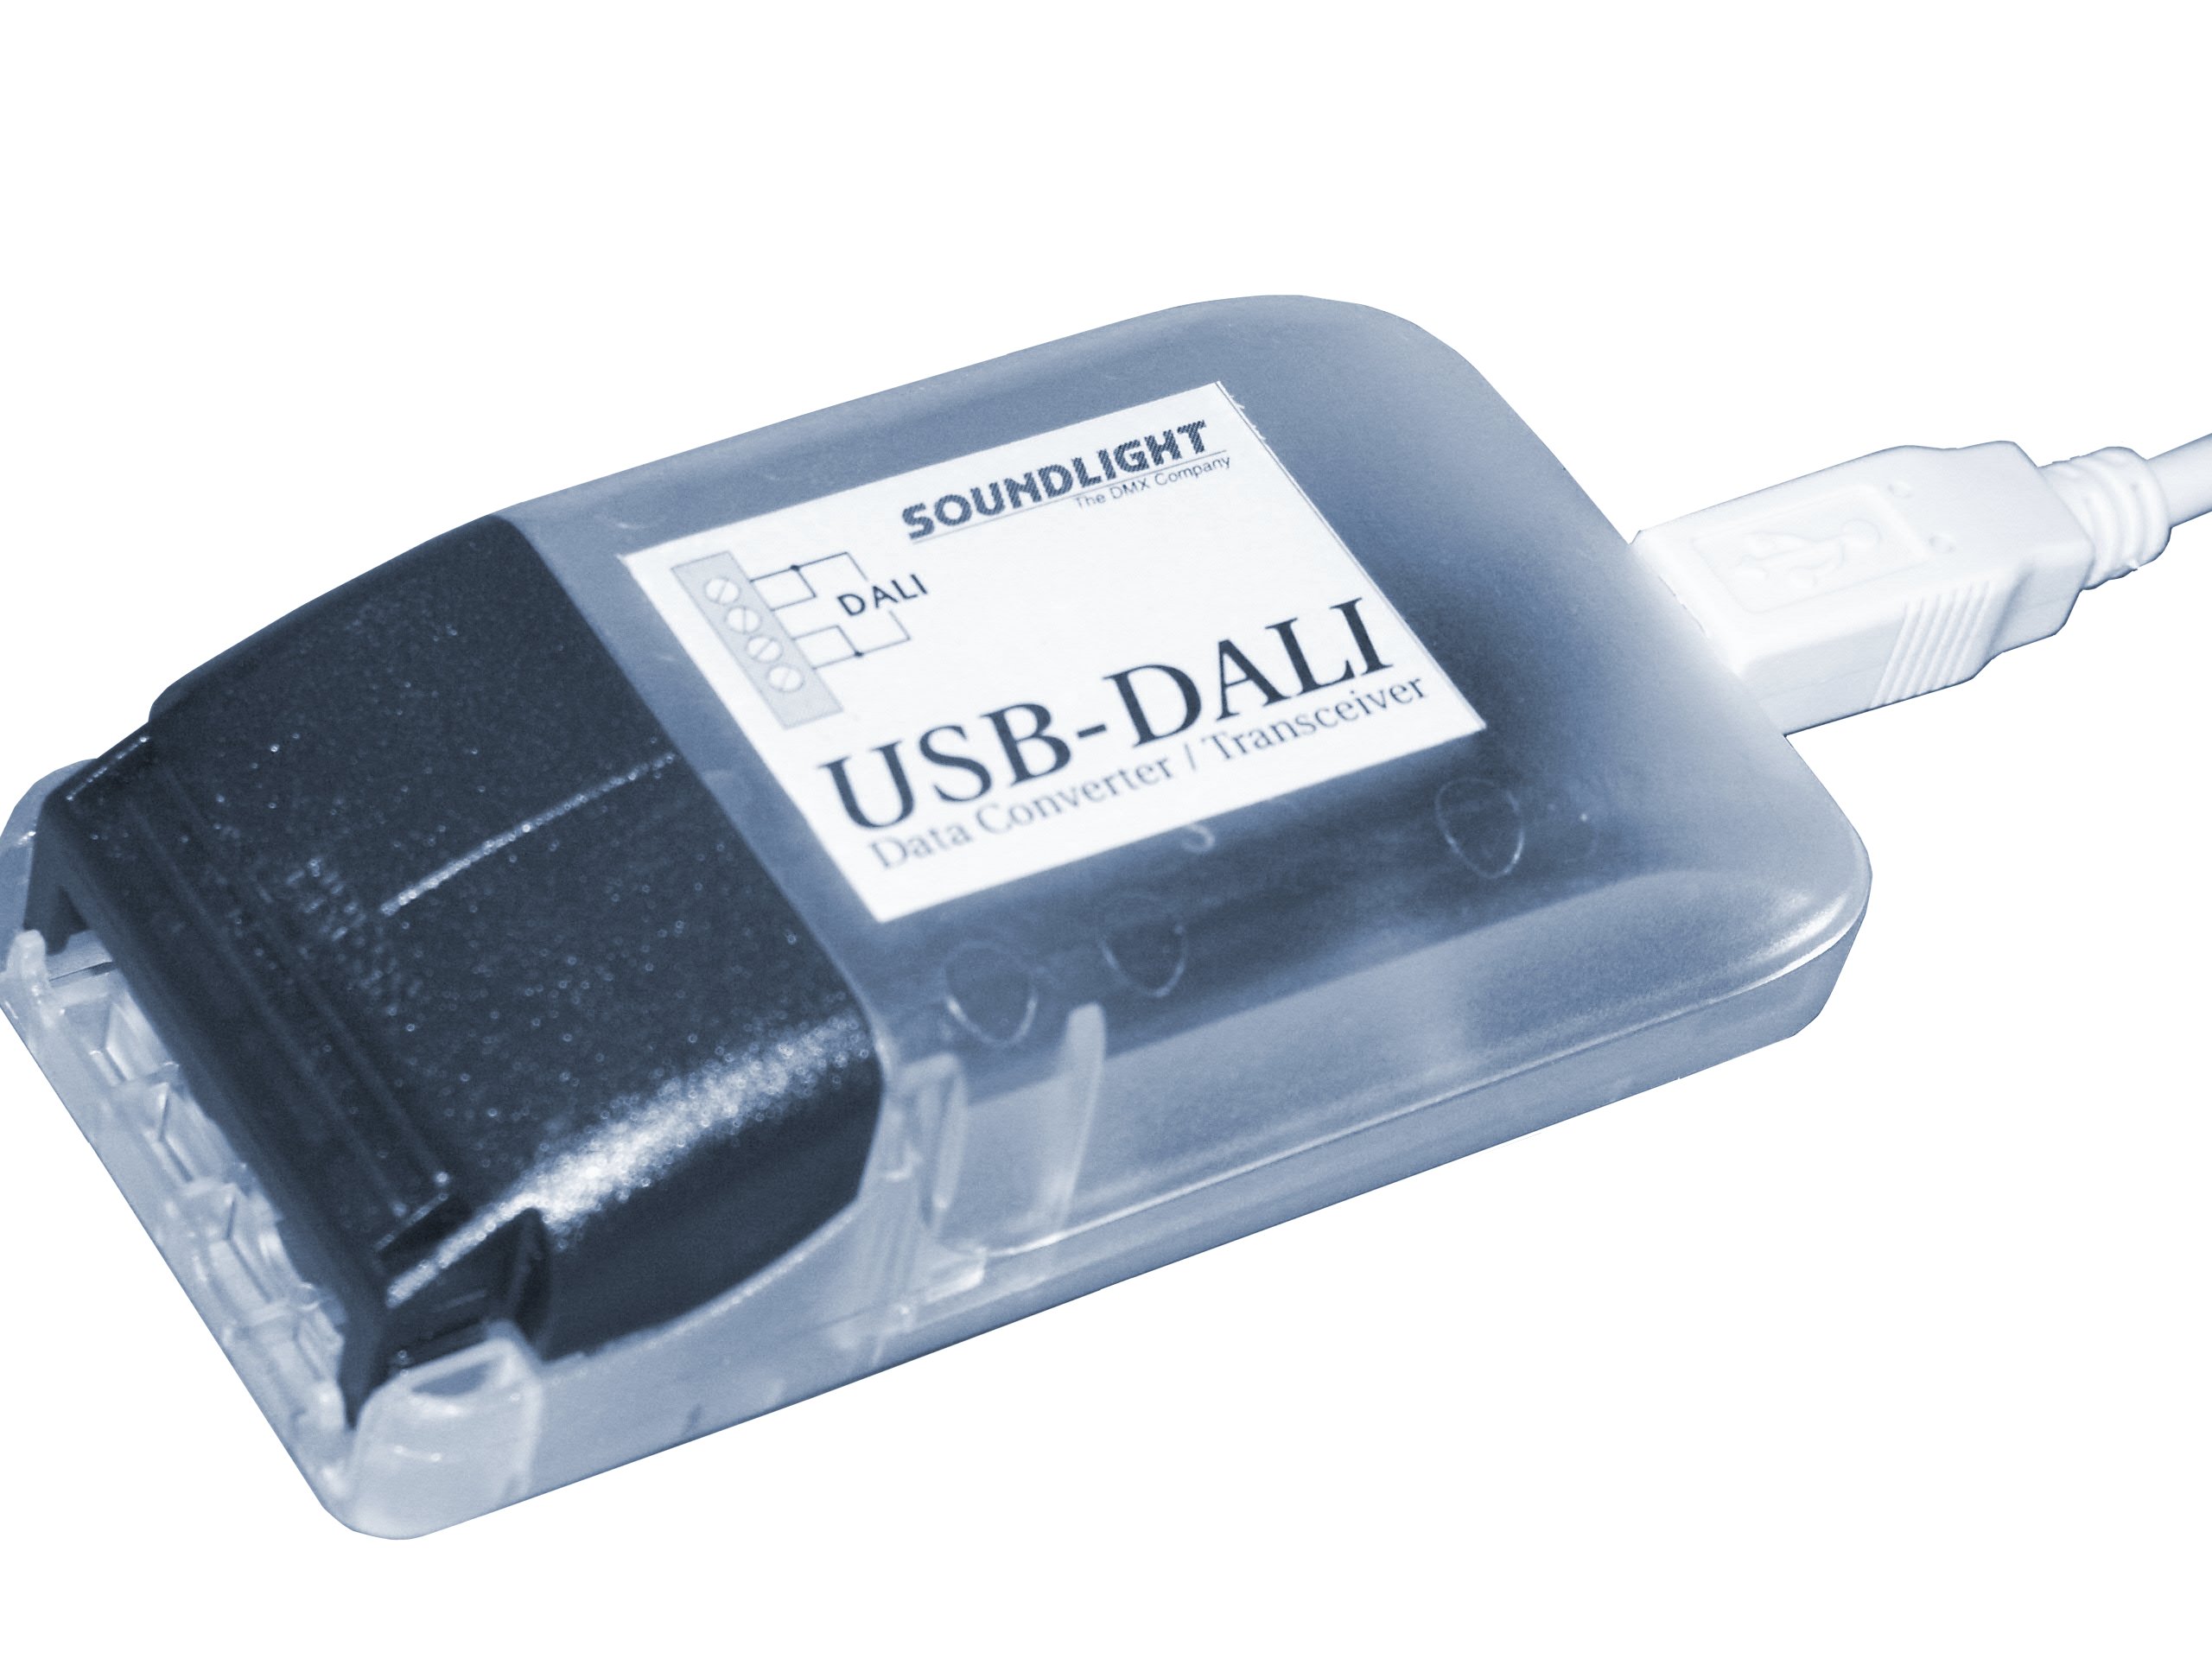 USB-DALI